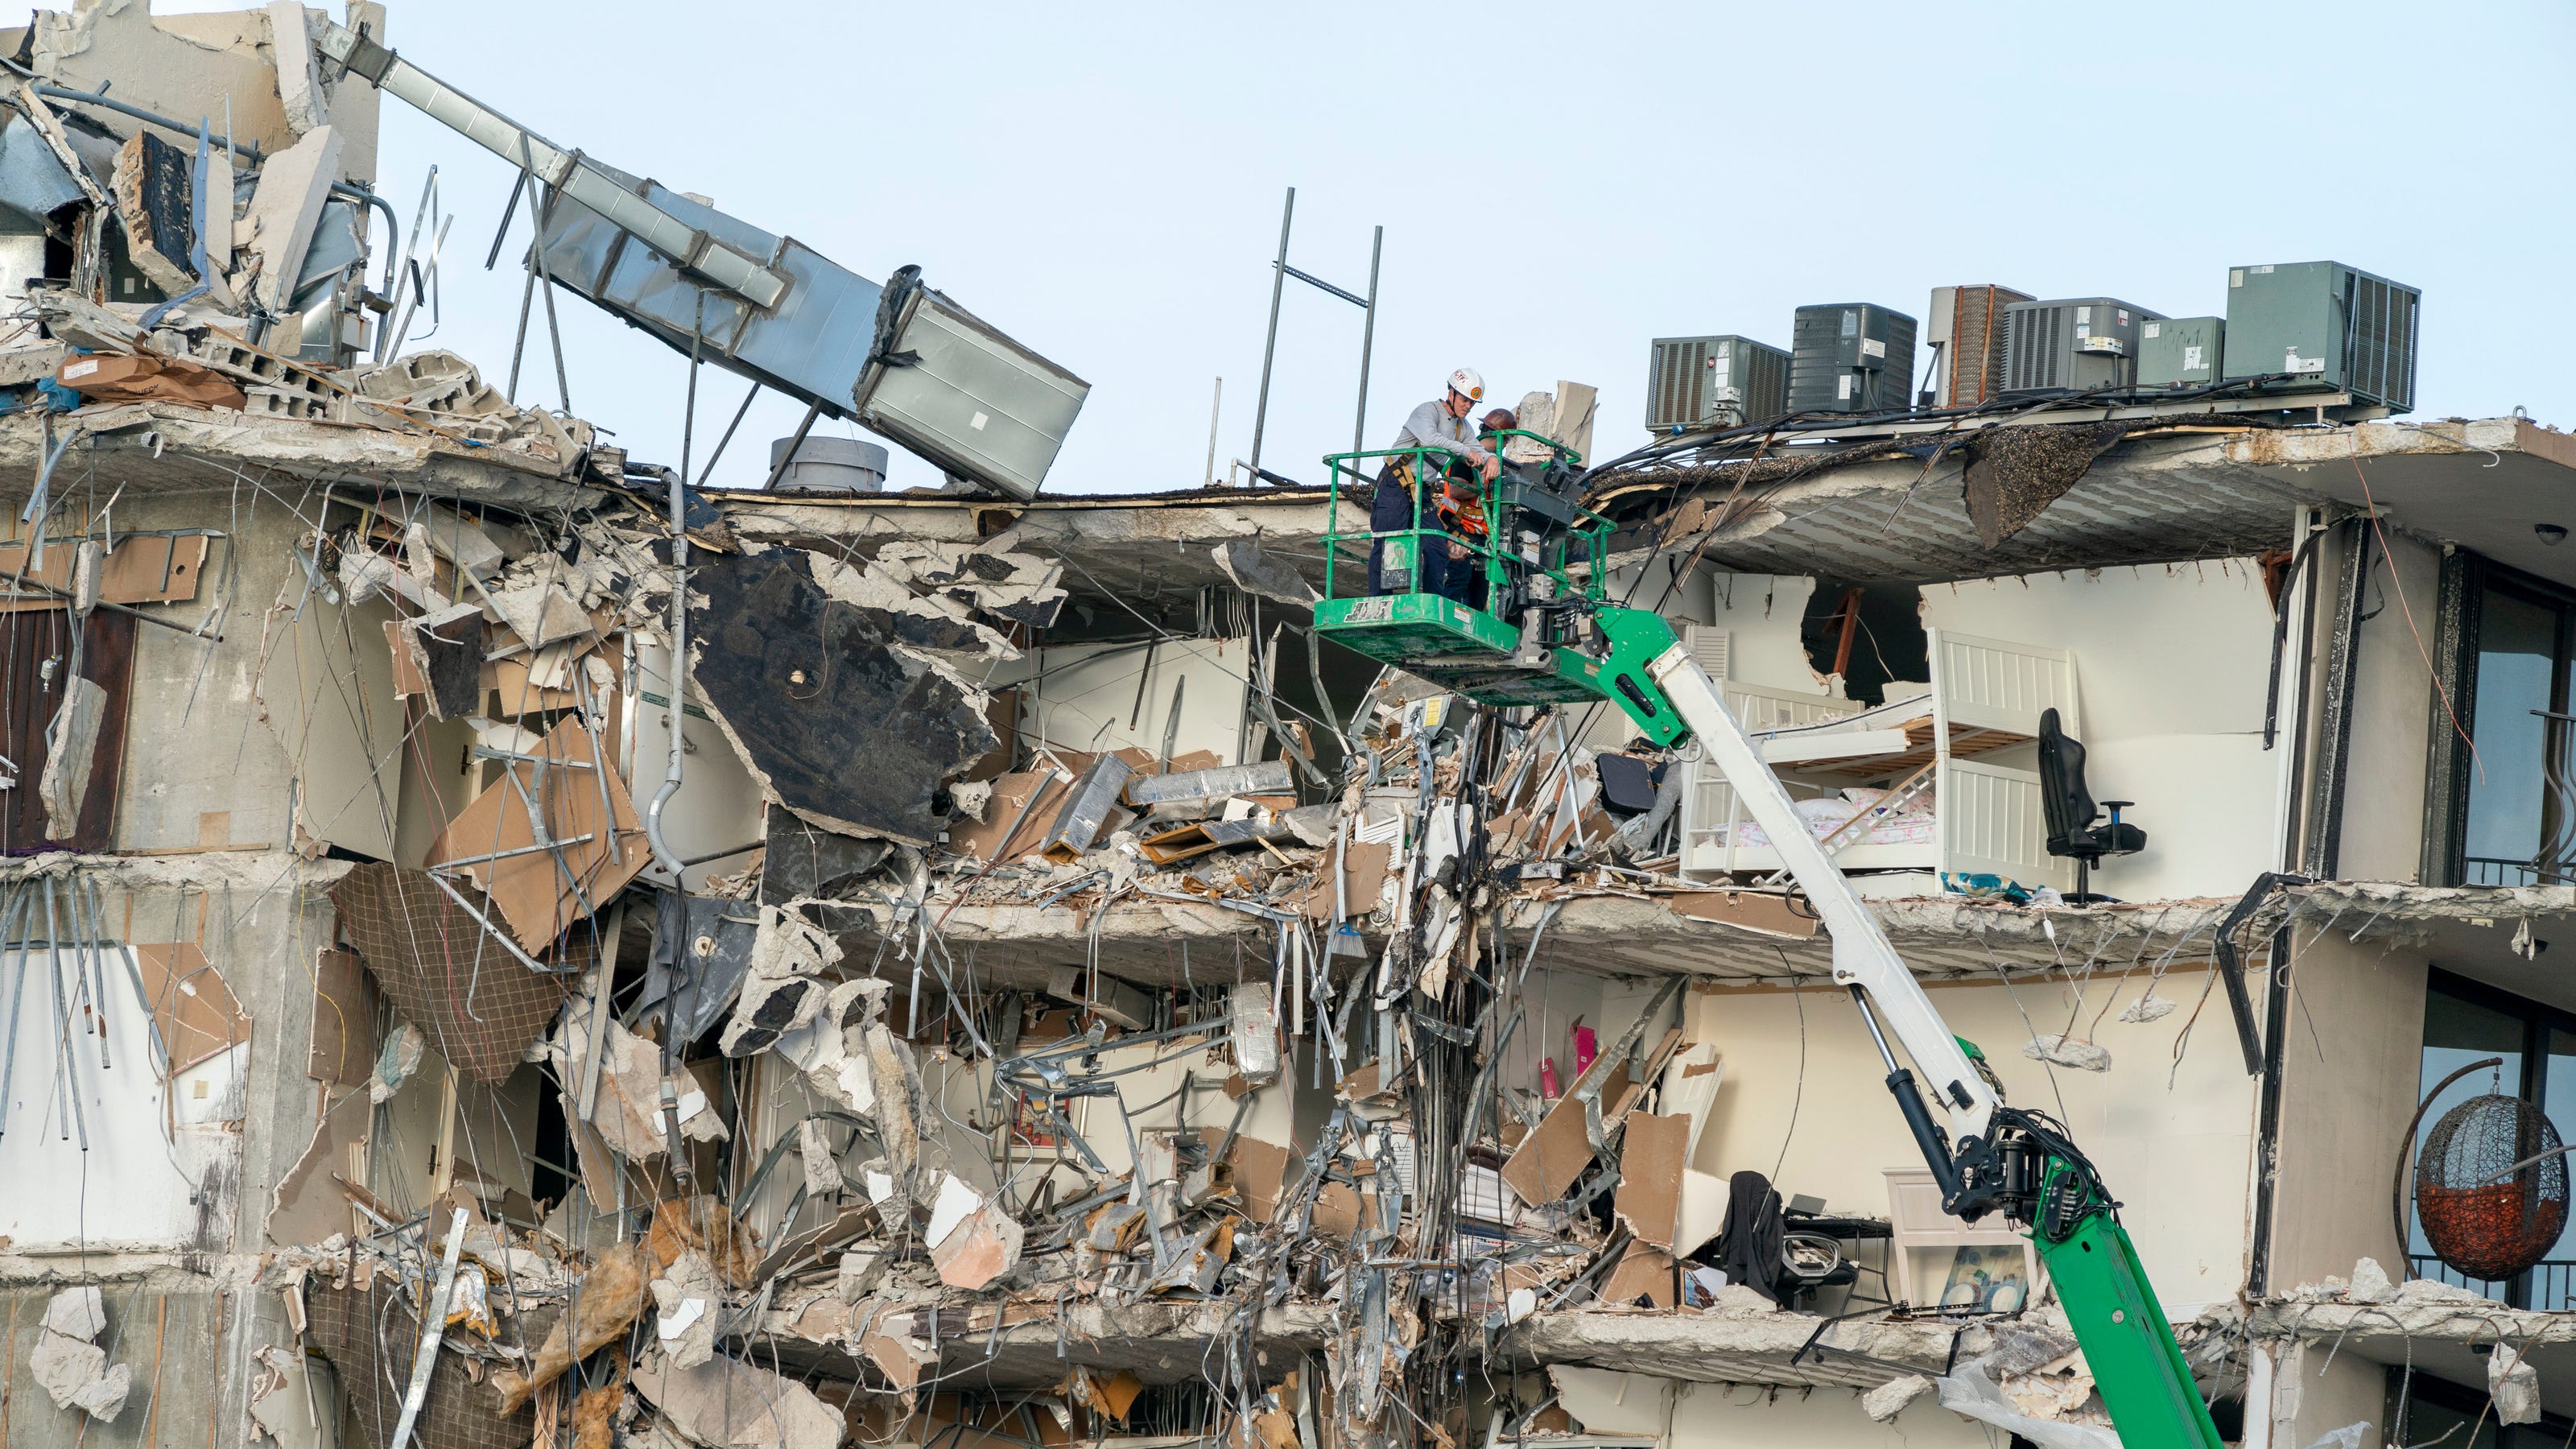 Miami building collapse: Surfside, Florida, condo search continues